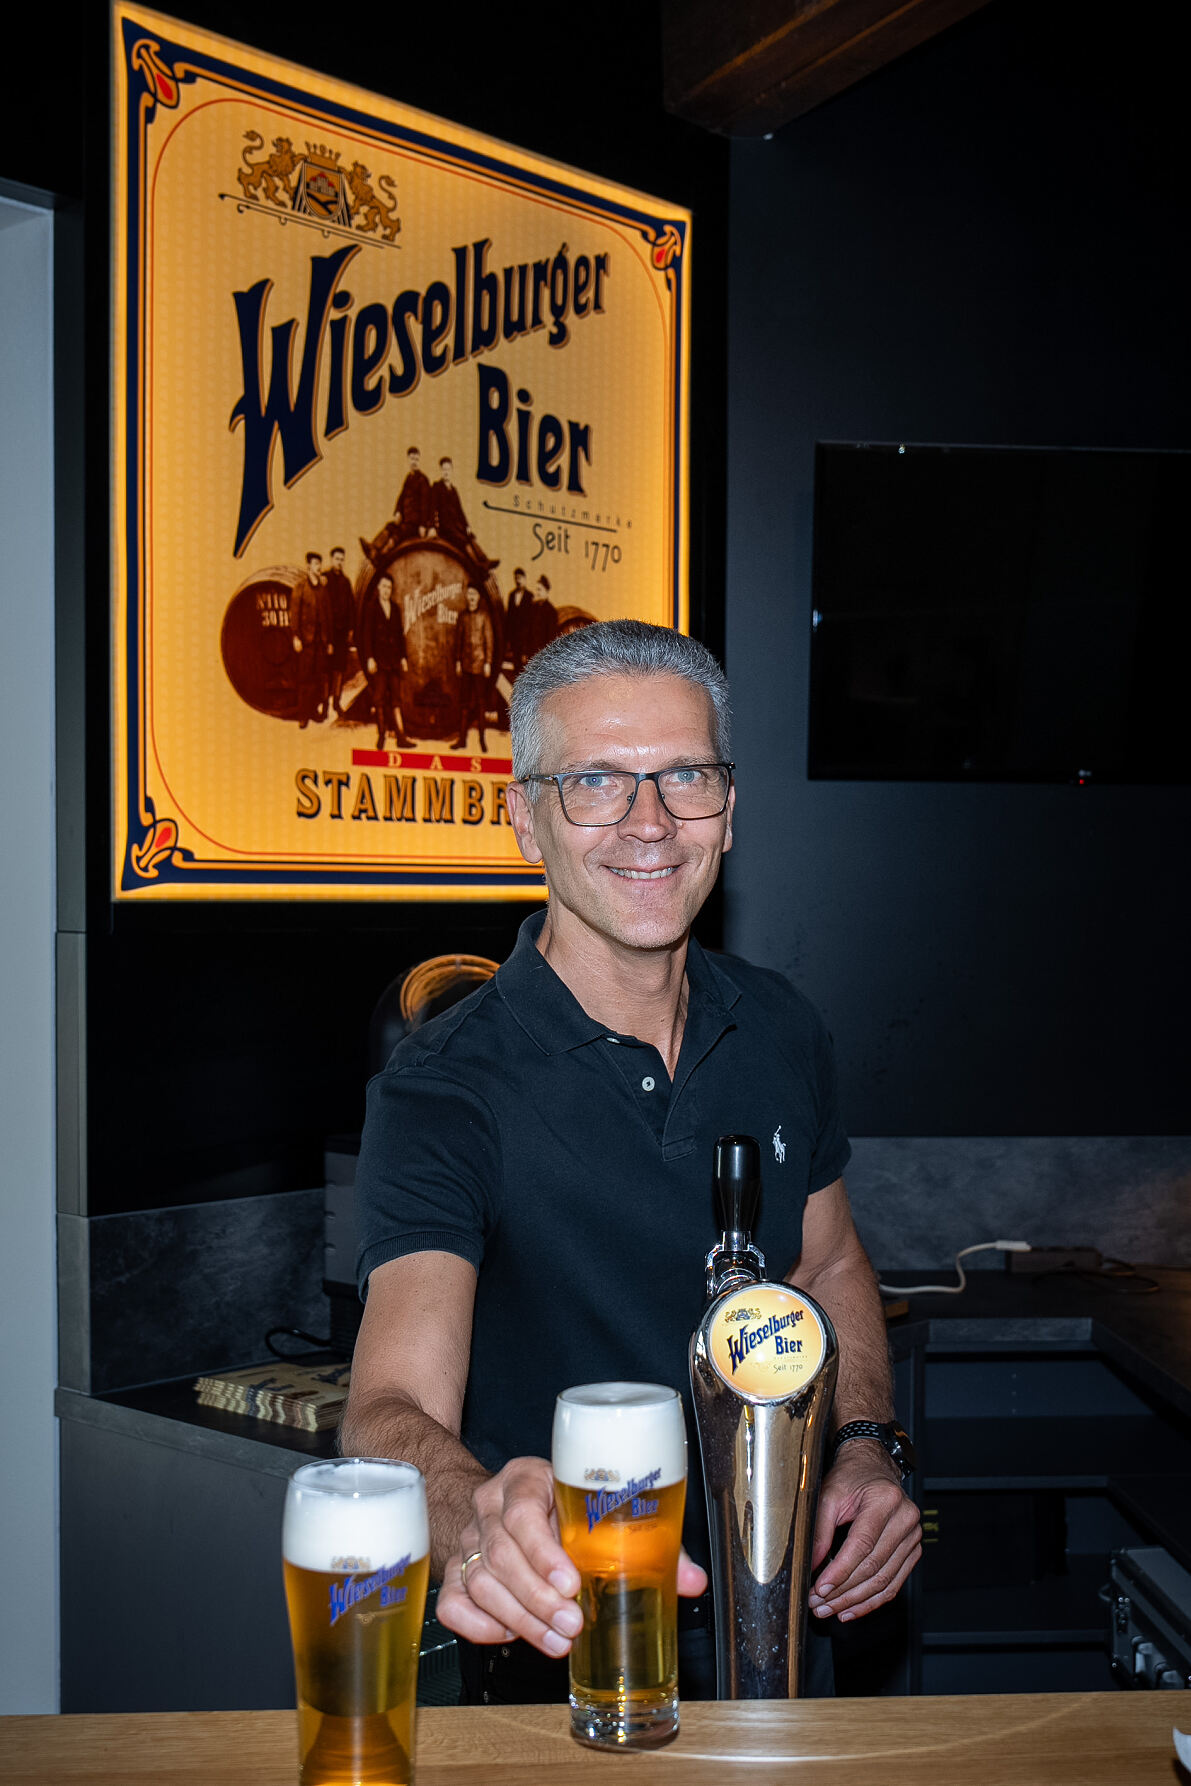 Brauen aus Leidenschaft ist das Motto der Brauerei Wieselburg, in der schon seit 1770 Wissen und Sorgfalt in die Erzeugung von bestem Bier fließen. Das Ergebnis, von Braumeister Christian Huber persönlich gezapft, kann sich sehen lassen. 